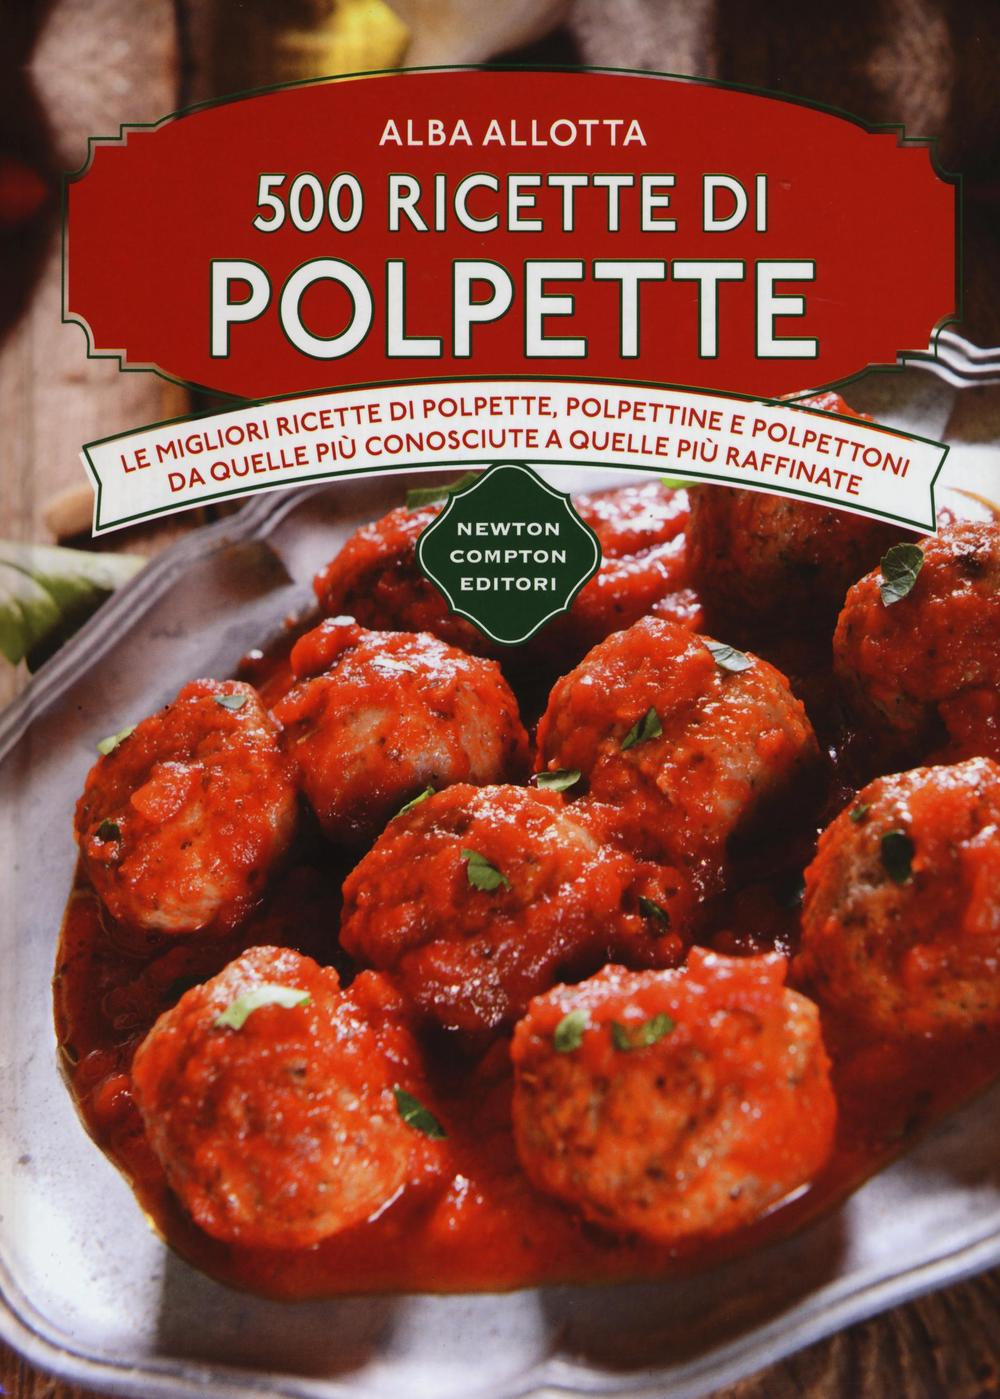 Image of 500 ricette di polpette